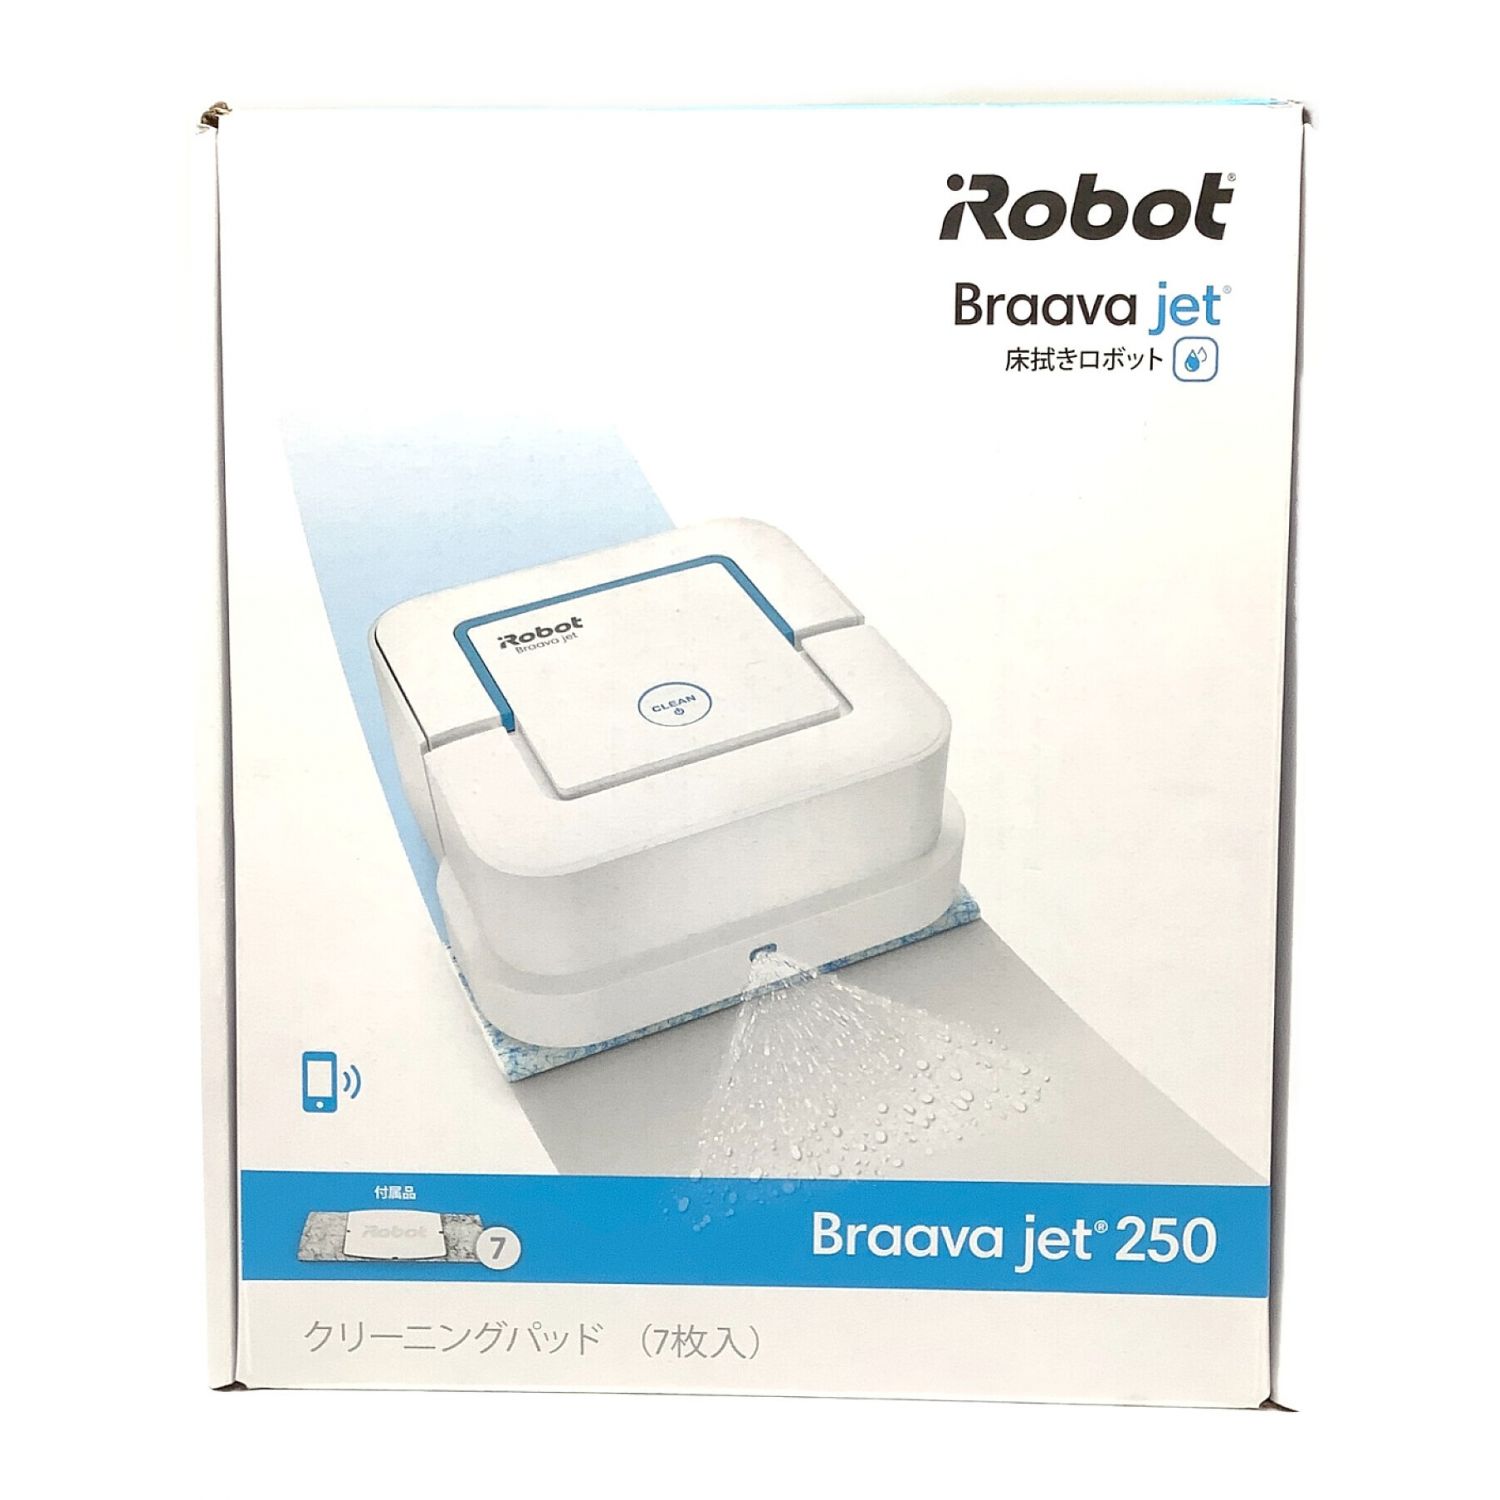 18758円 おすすめ iRobot 床拭きロボット ブラーバ ジェット 250 B250060